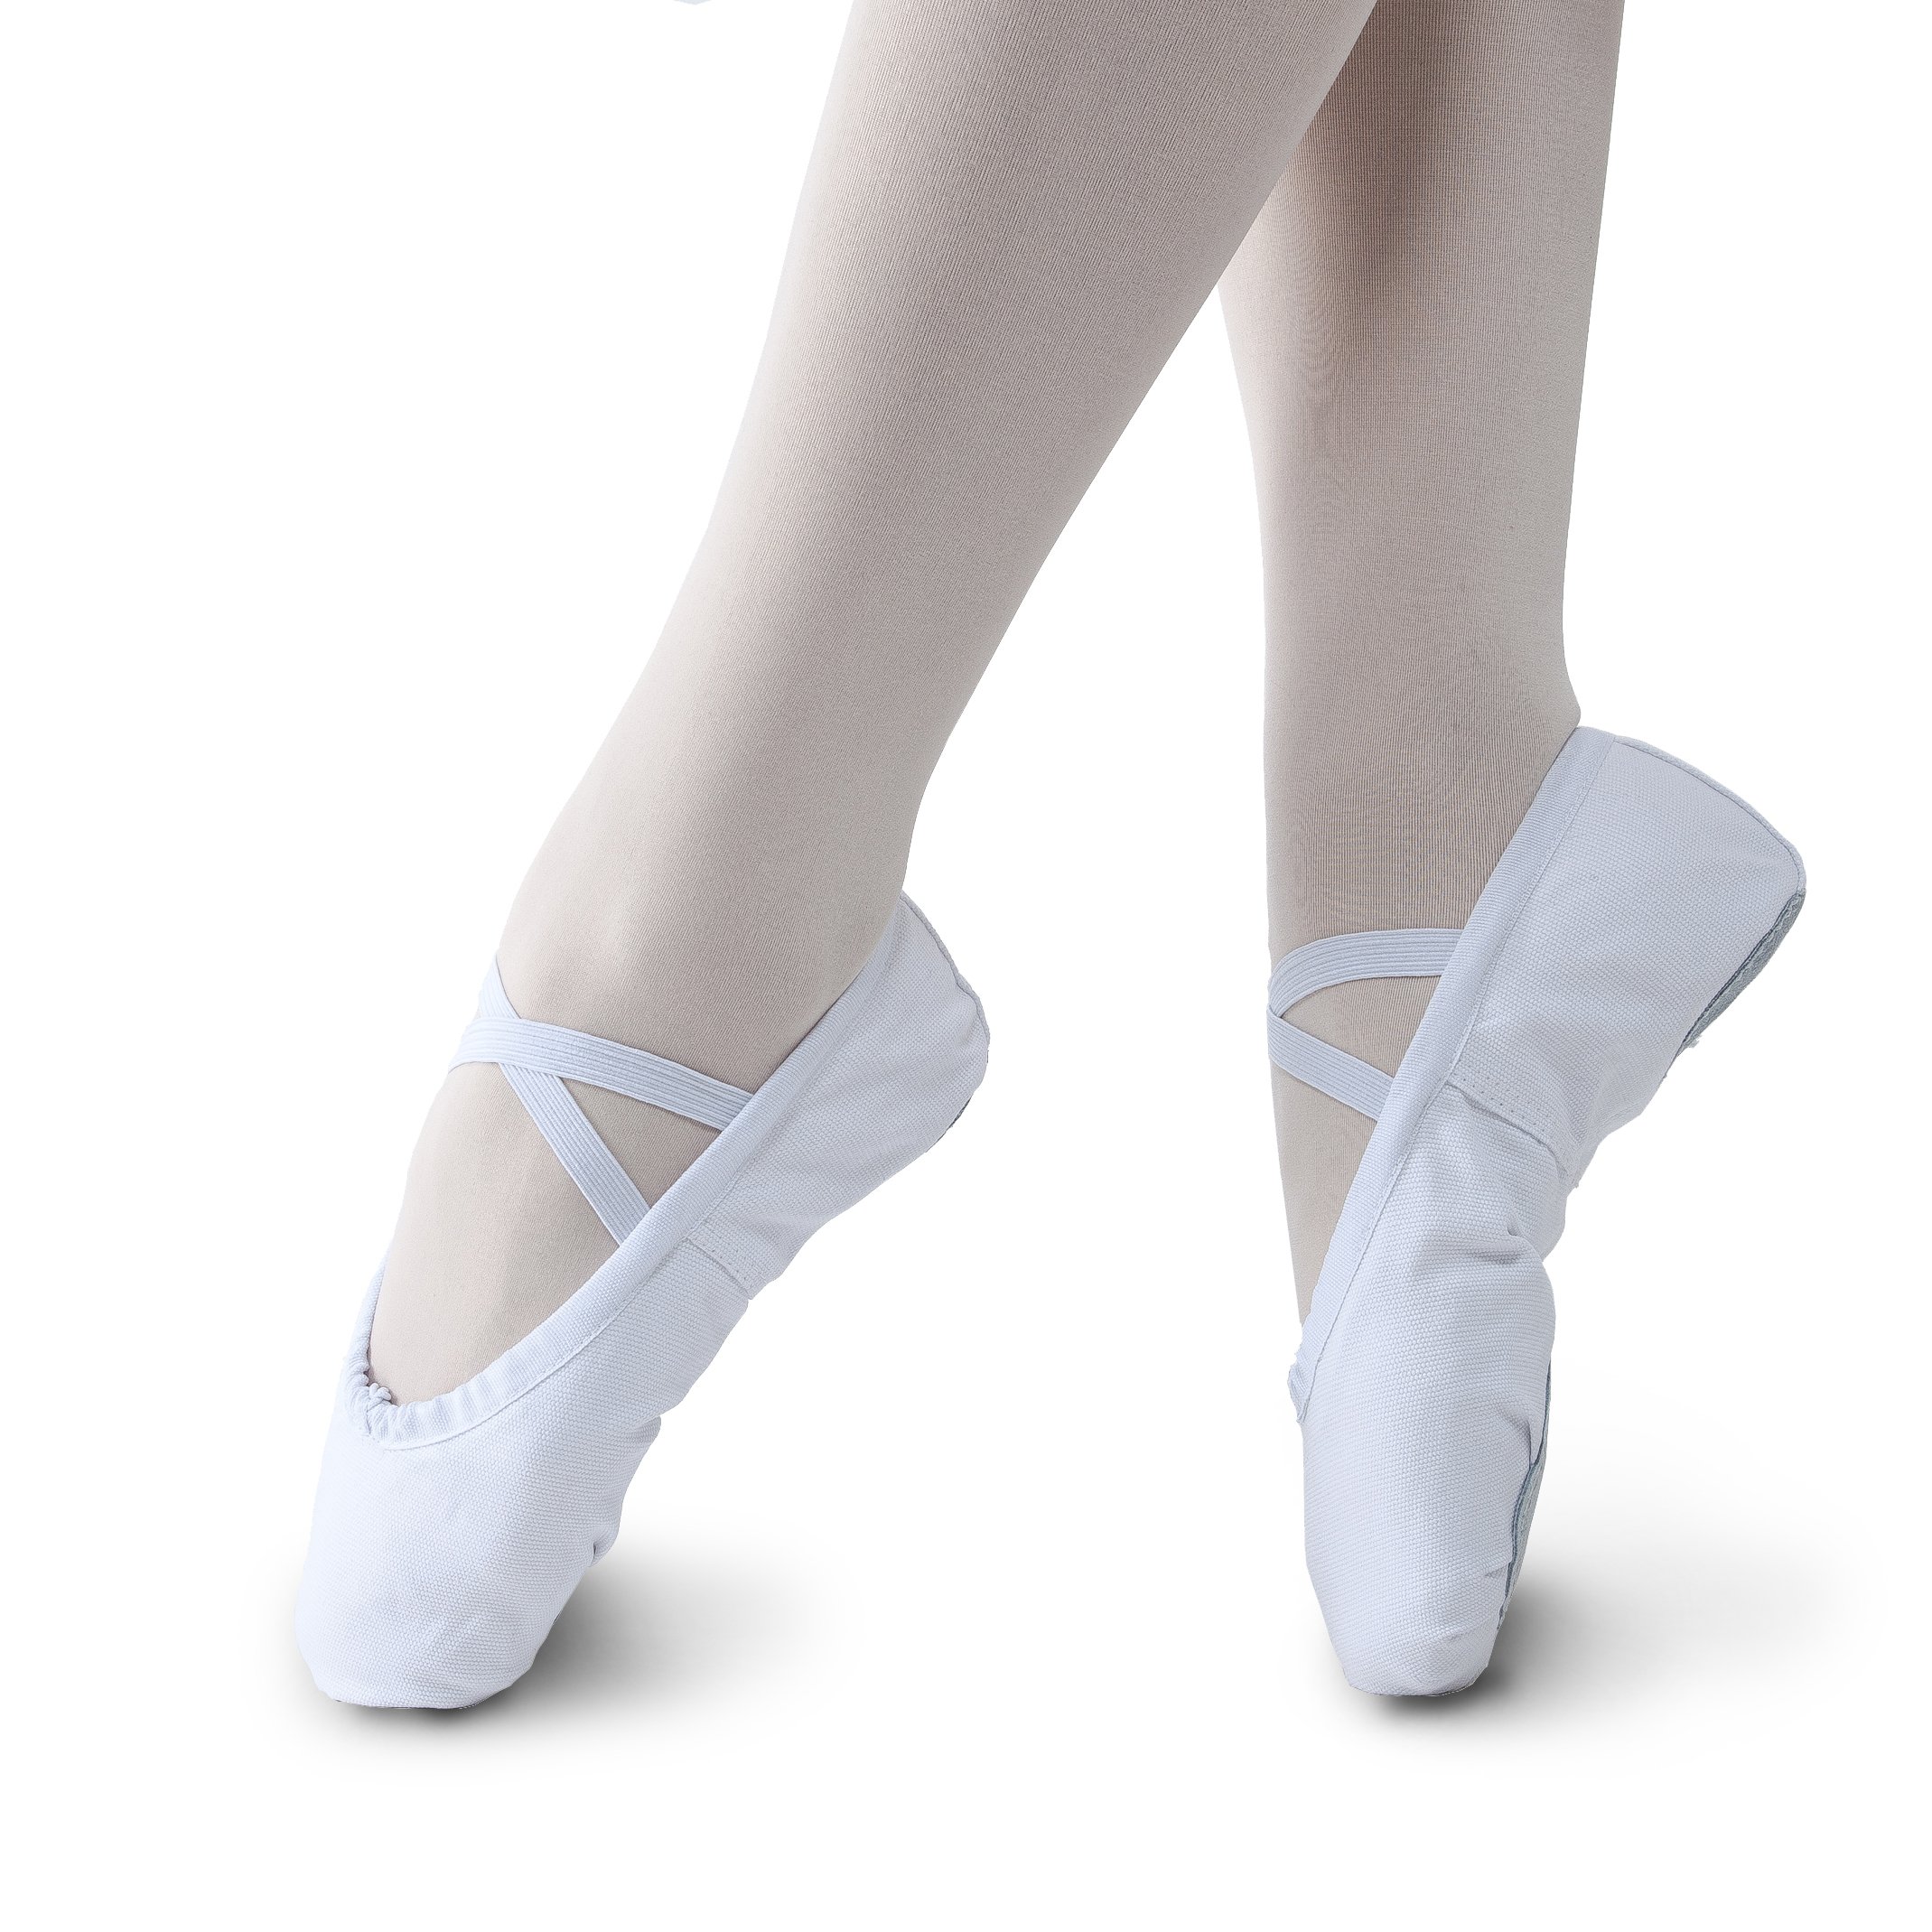 Stelle Ballet Shoes for Girls Women Canvas Ballet Slippers Dance Ballerina Shoes for Toddler/Little Kid/Big Kid/Women